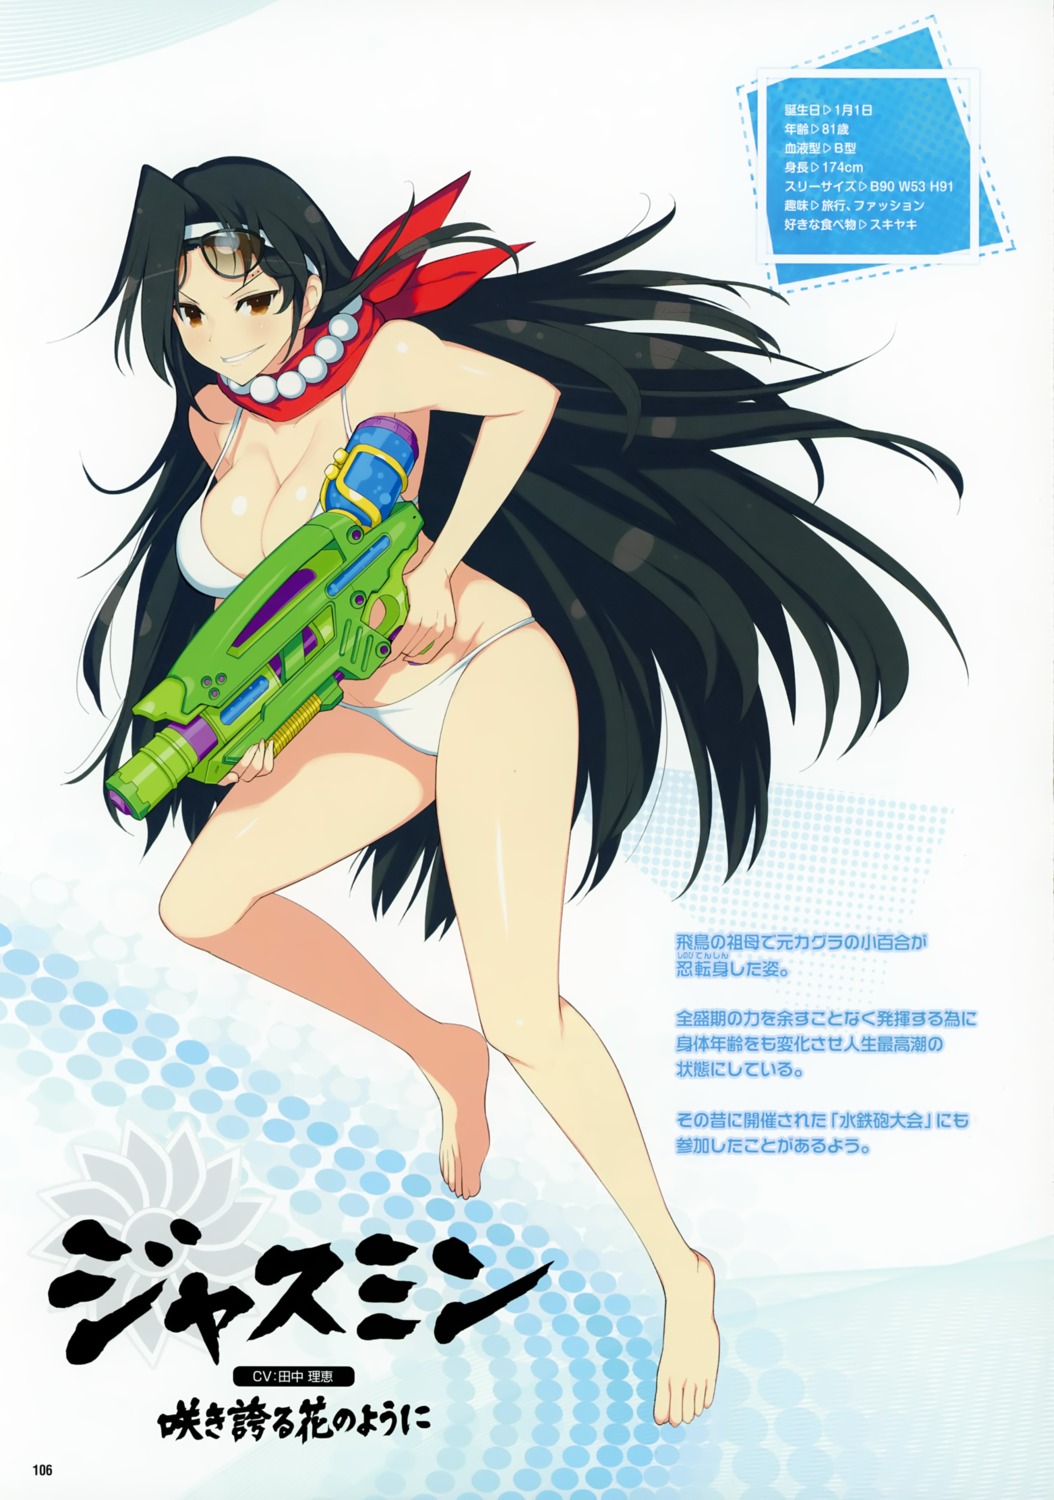 bikini cleavage gun jasmine_(senran_kagura) profile_page senran_kagura senran_kagura:_peach_beach_splash swimsuits yaegashi_nan